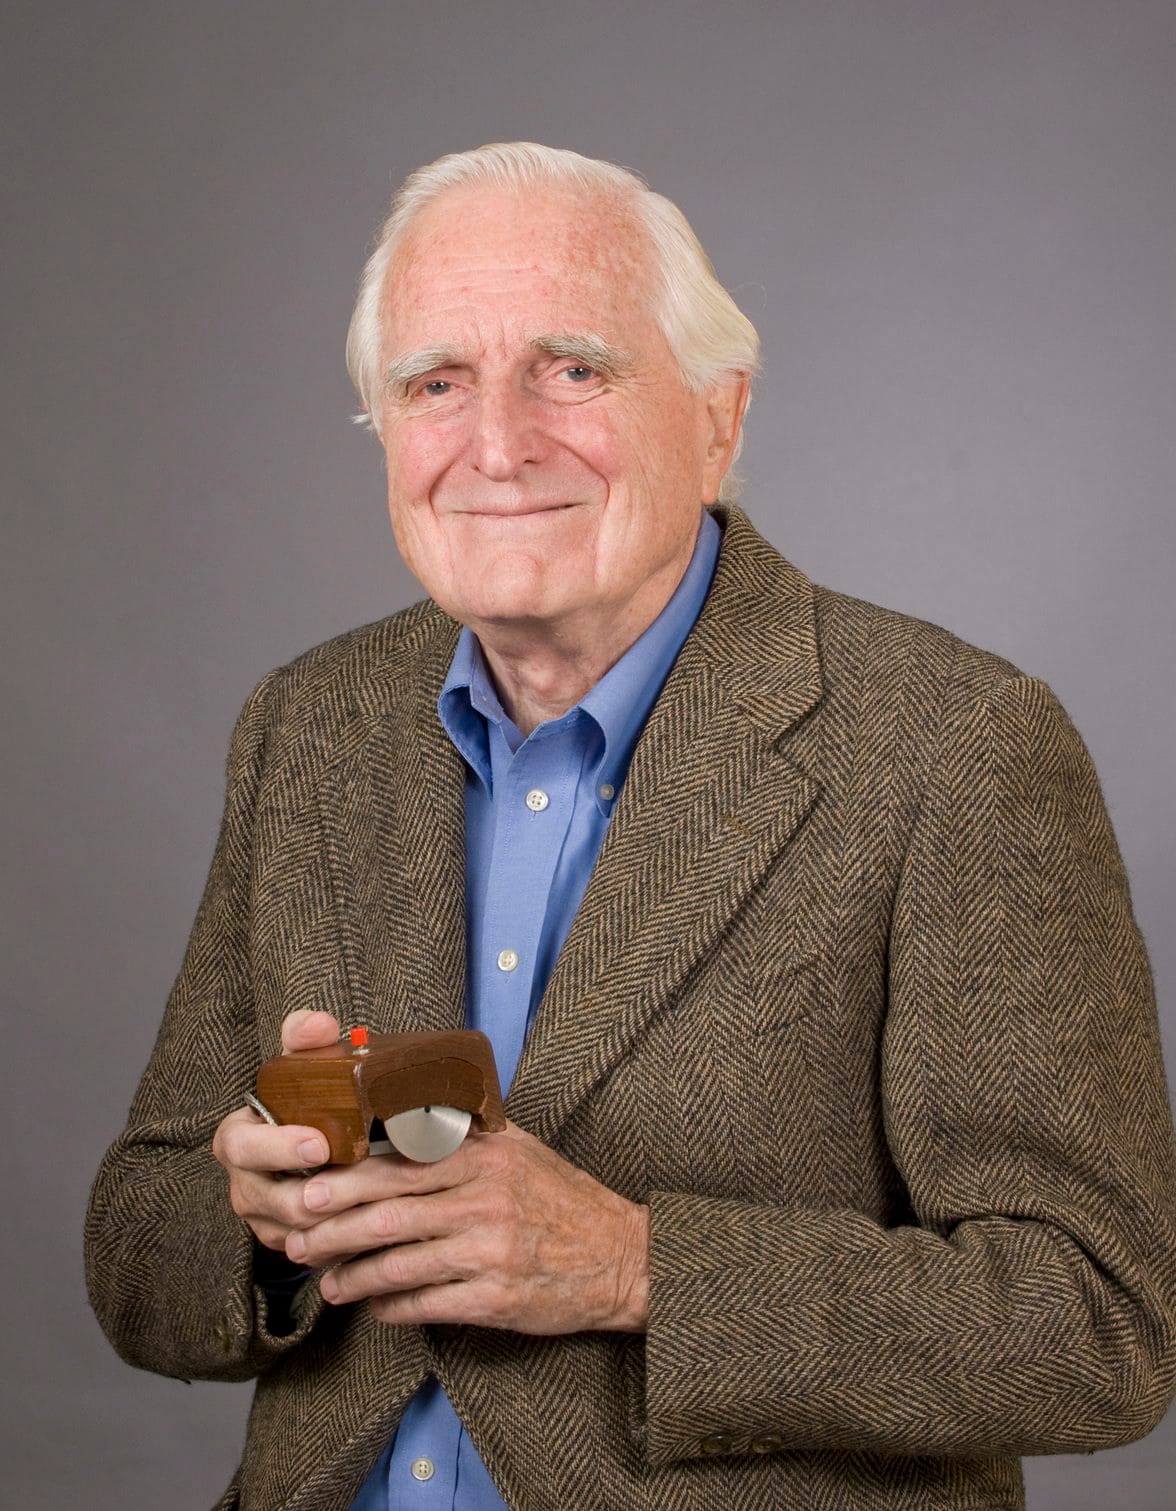 Douglas C. Engelbart hat diese Zeitenwende noch mitbekommen. Er starb am 2. Juli 2013 im Alter von 88 Jahren in Atherton (Kalifornien). Das Foto zeigt ihn mit der von ihm erfundenen Maus in Händen (undatierte Aufnahme).